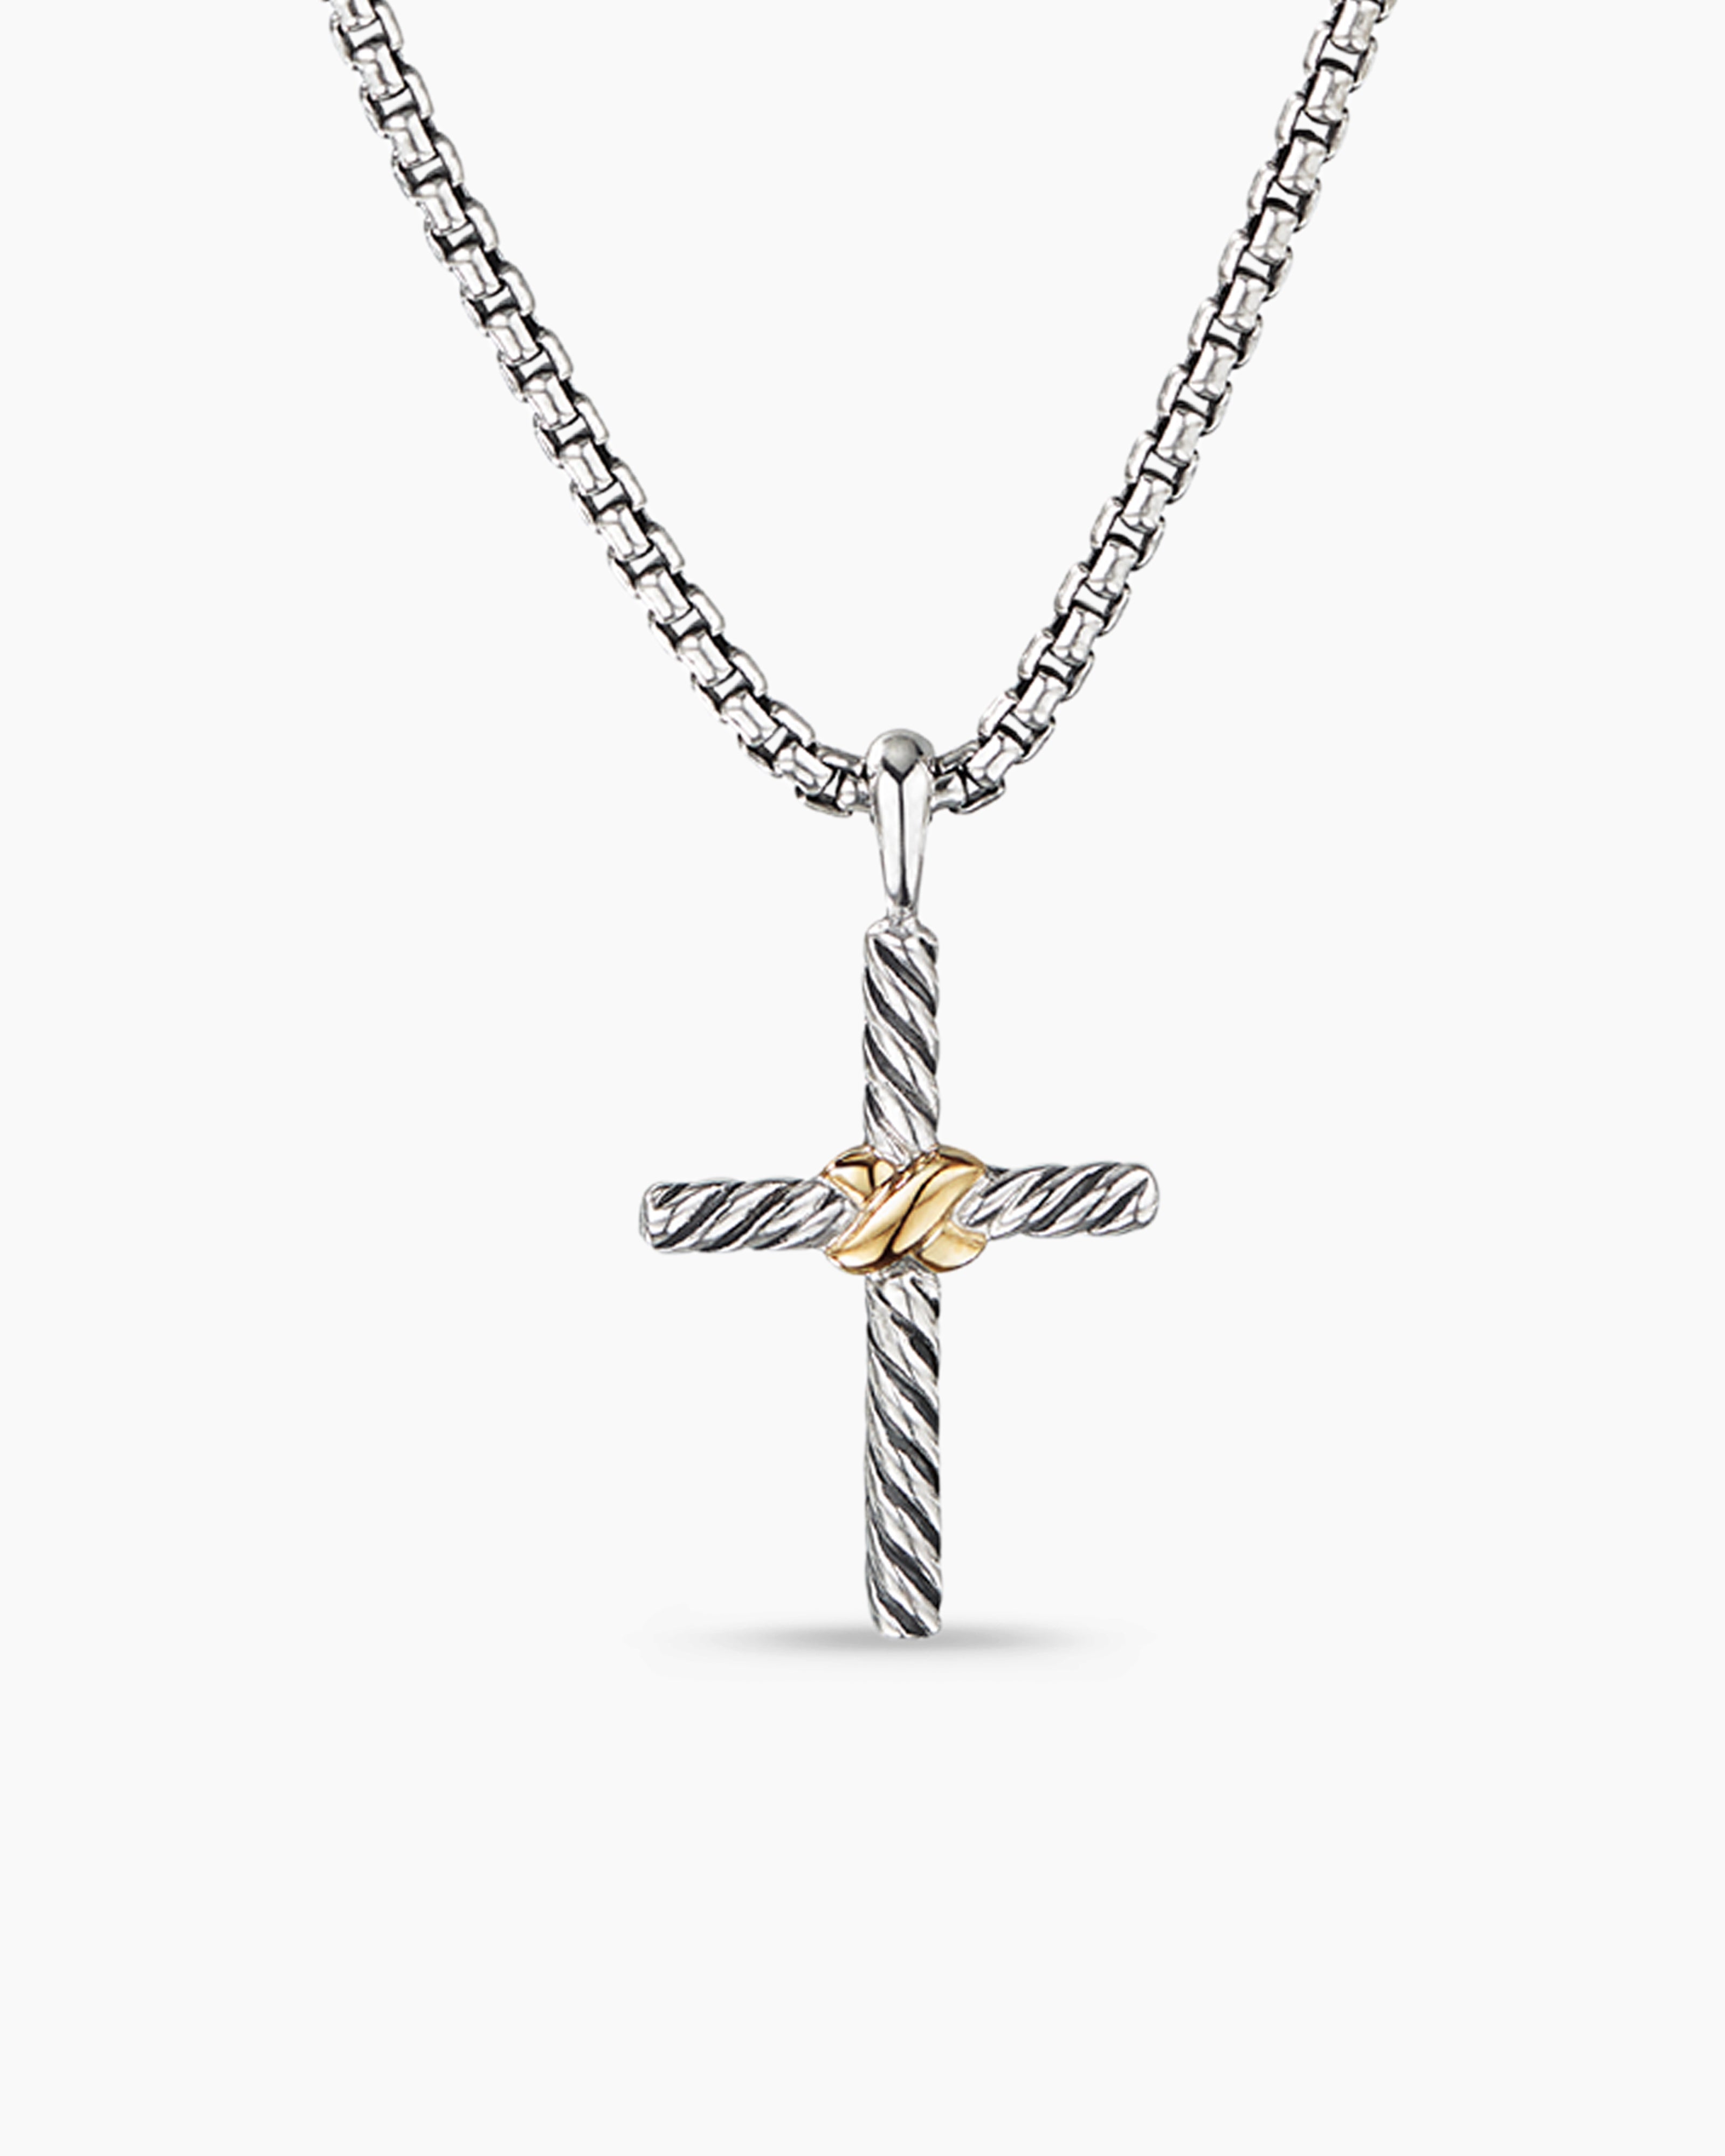 Women's 925 Sterling Silver Cross Necklace, 18